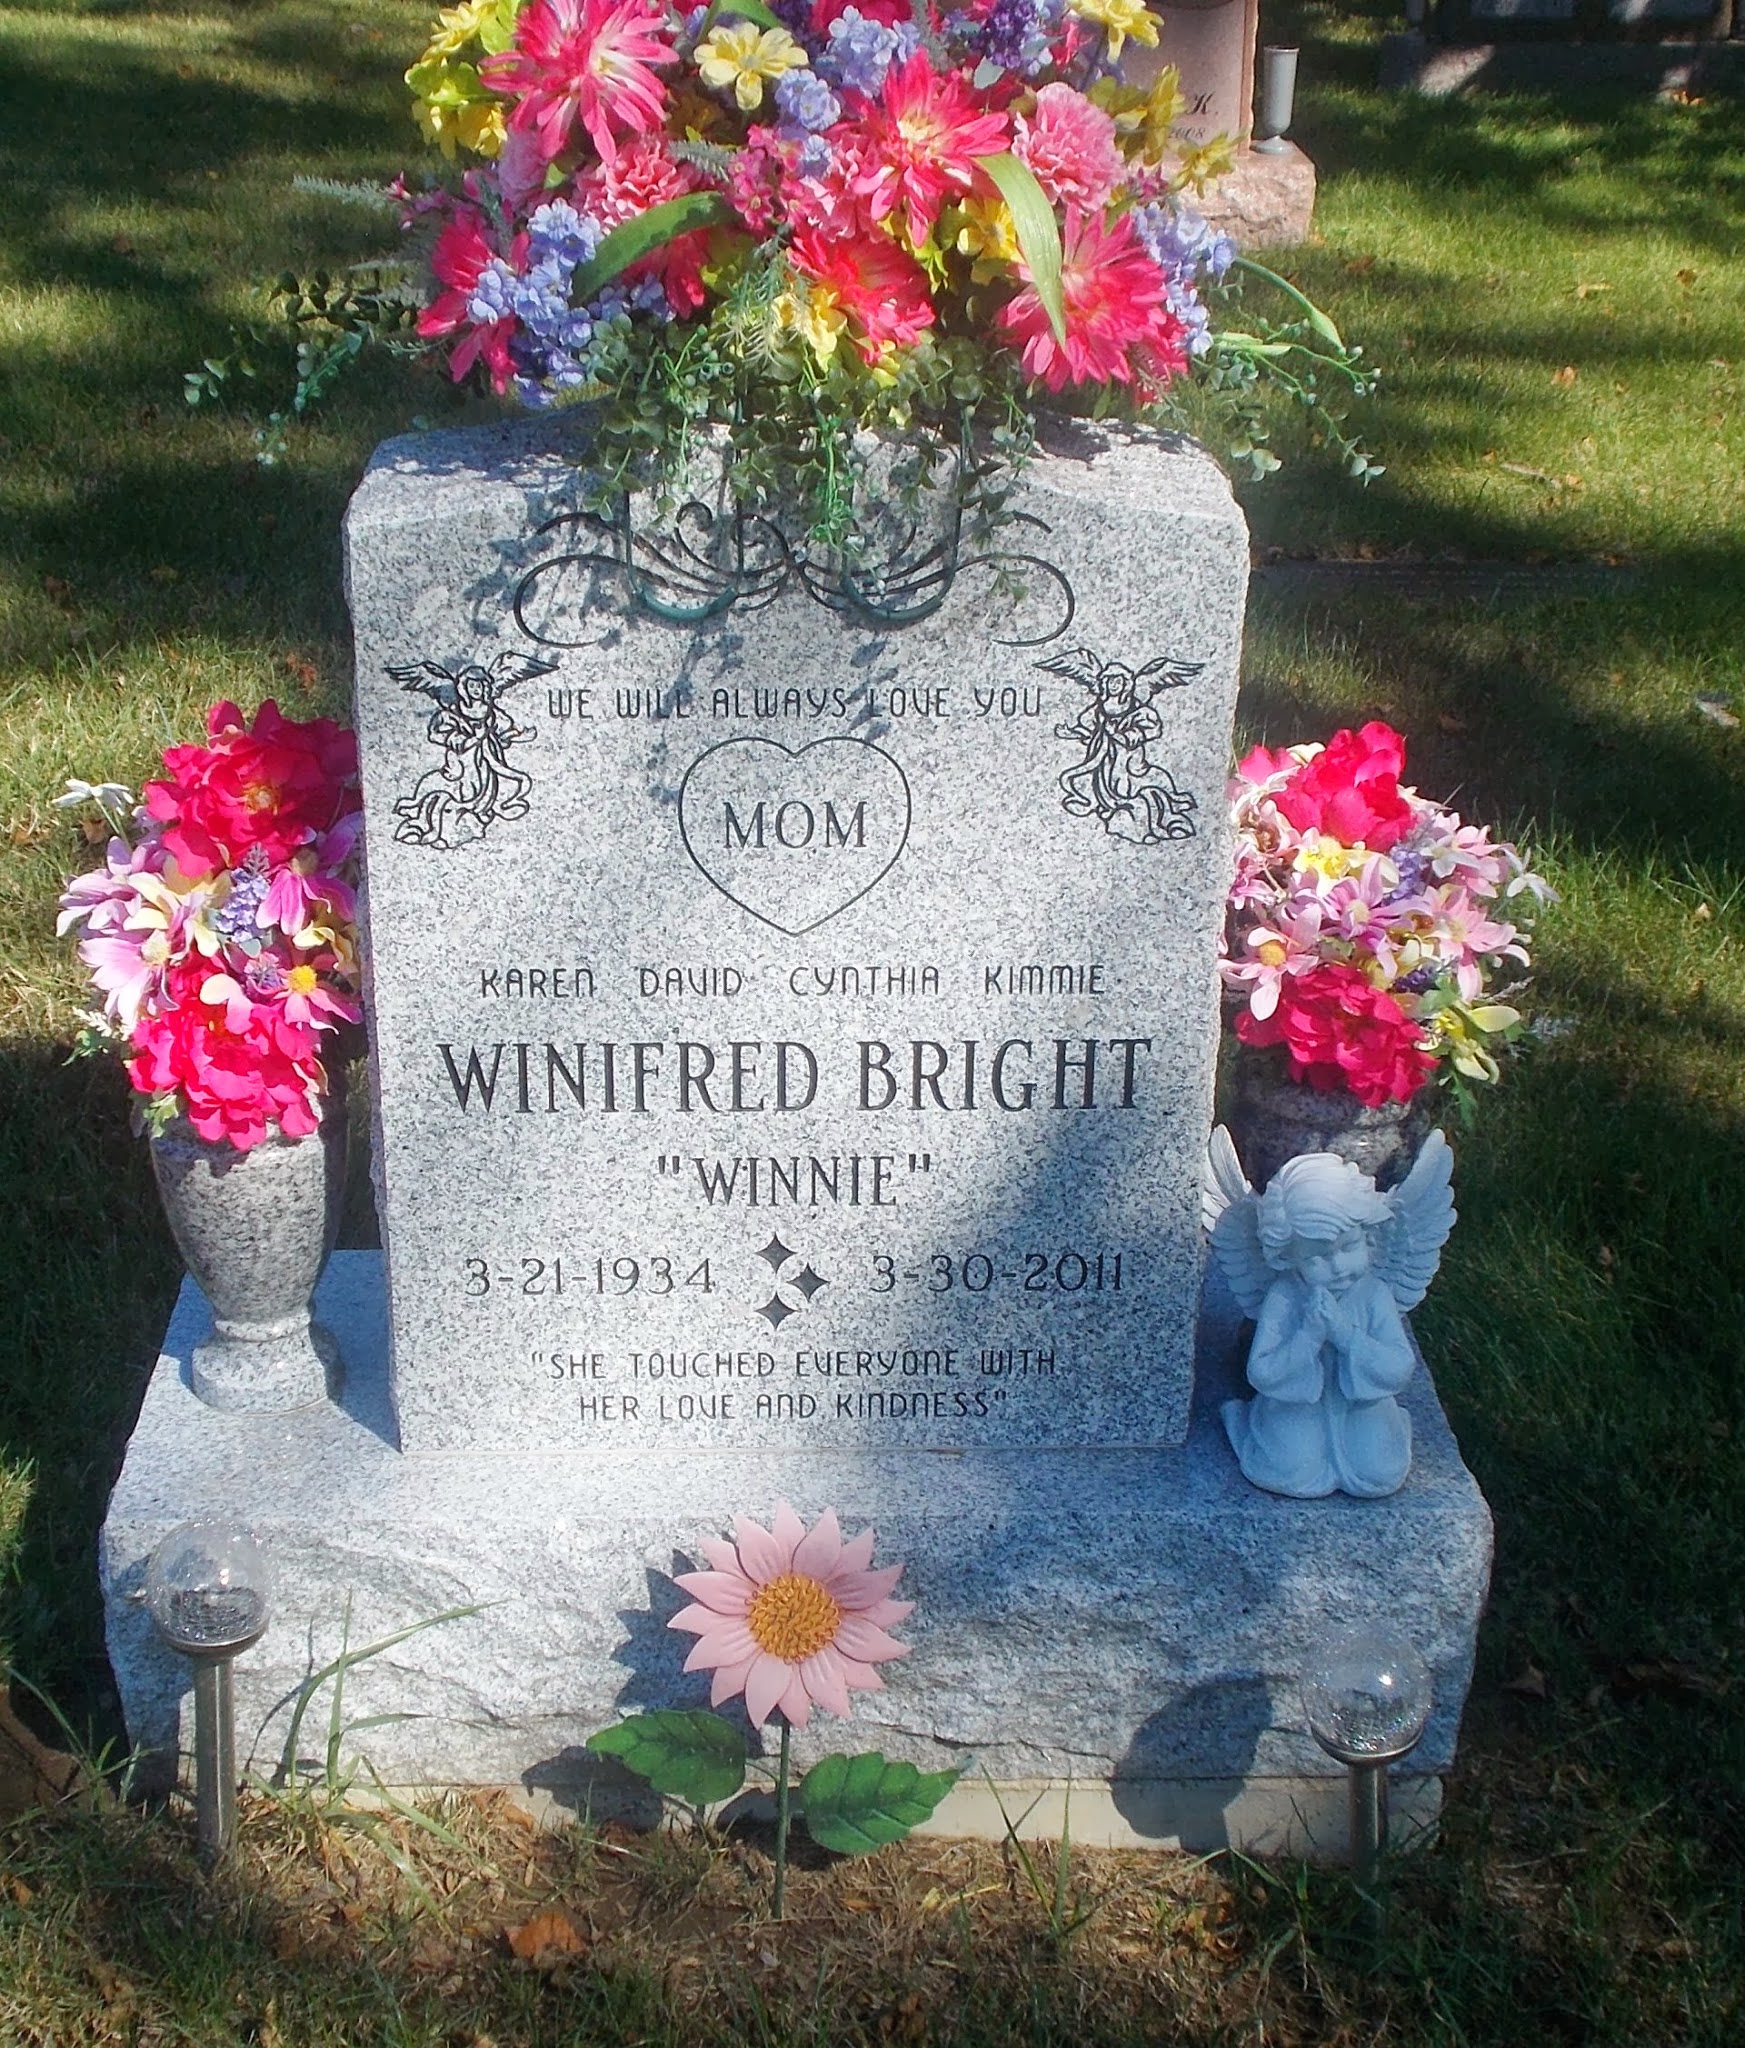 Winifred "Winnie" Bright